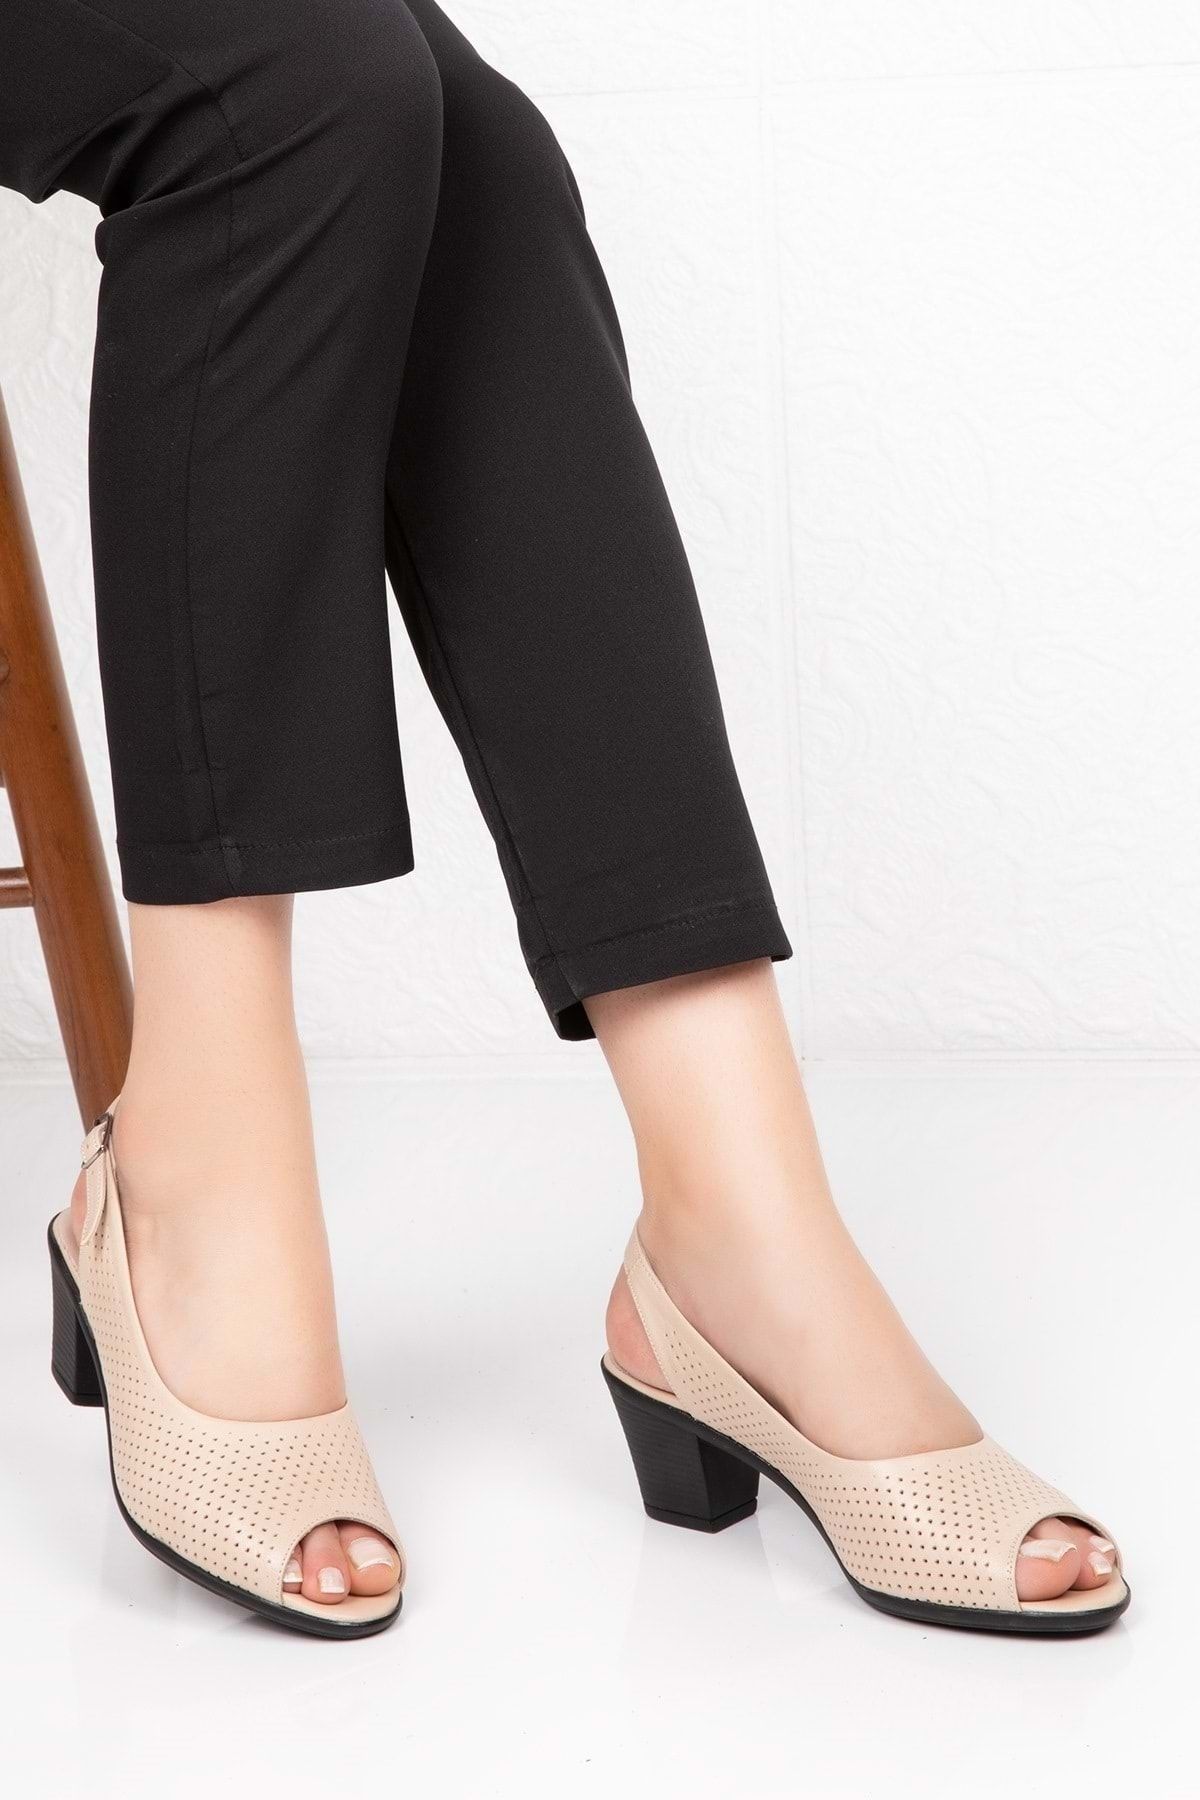 Gondol Kadın Bej  Deri Topuklu Ayakkabı